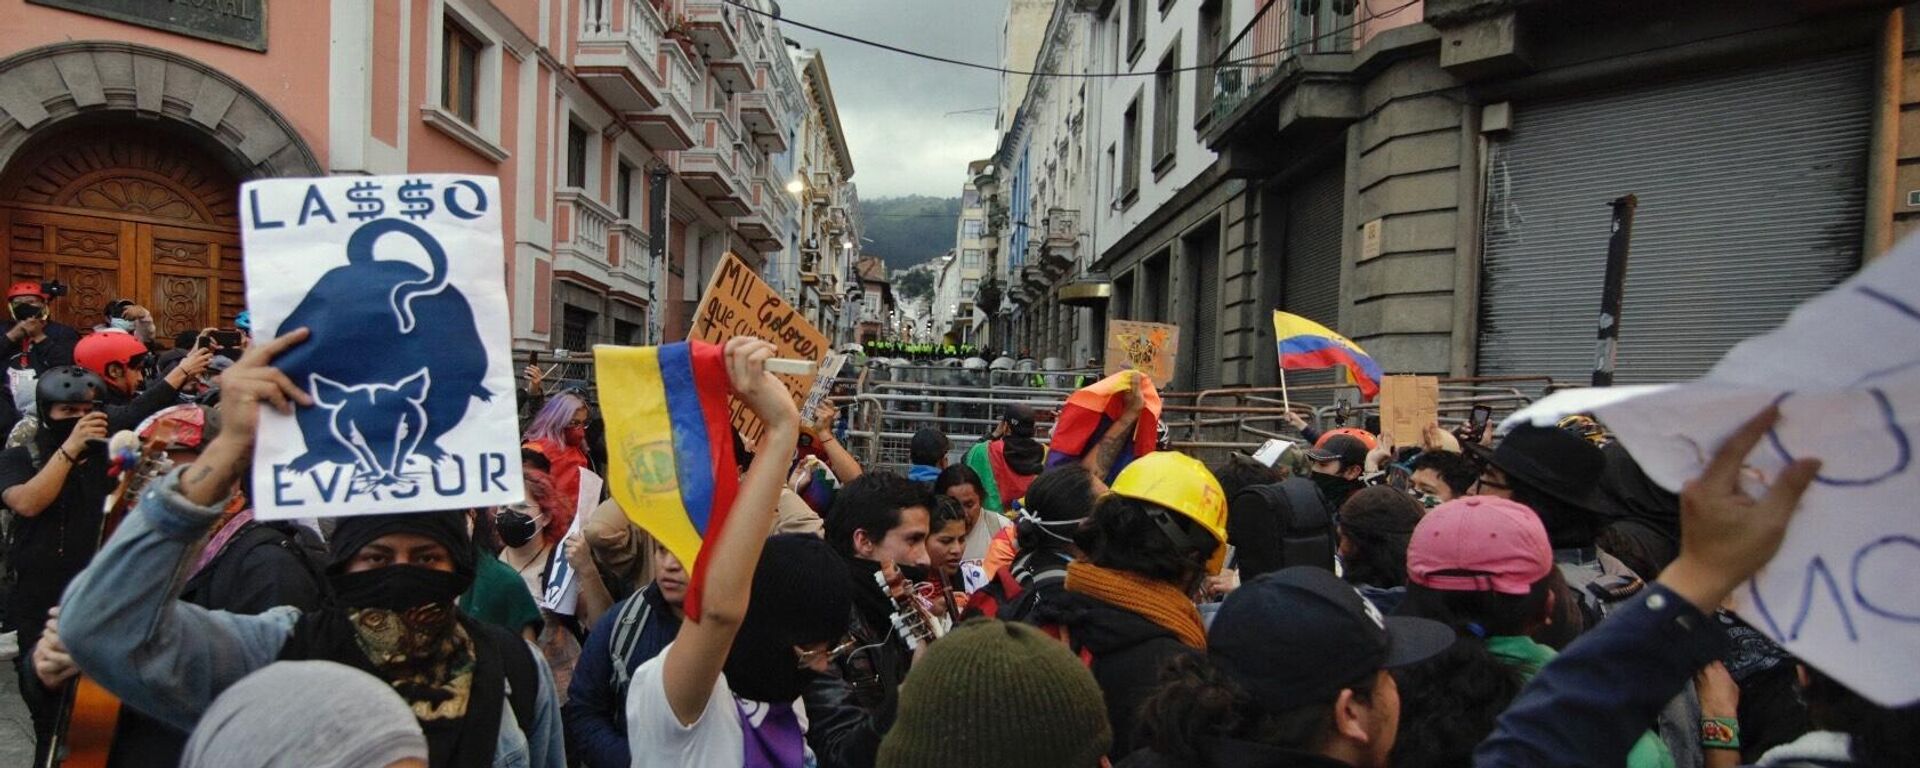 Las protestas en Ecuador contra el Gobierno de Guillermo Lasso - Sputnik Mundo, 1920, 18.06.2022